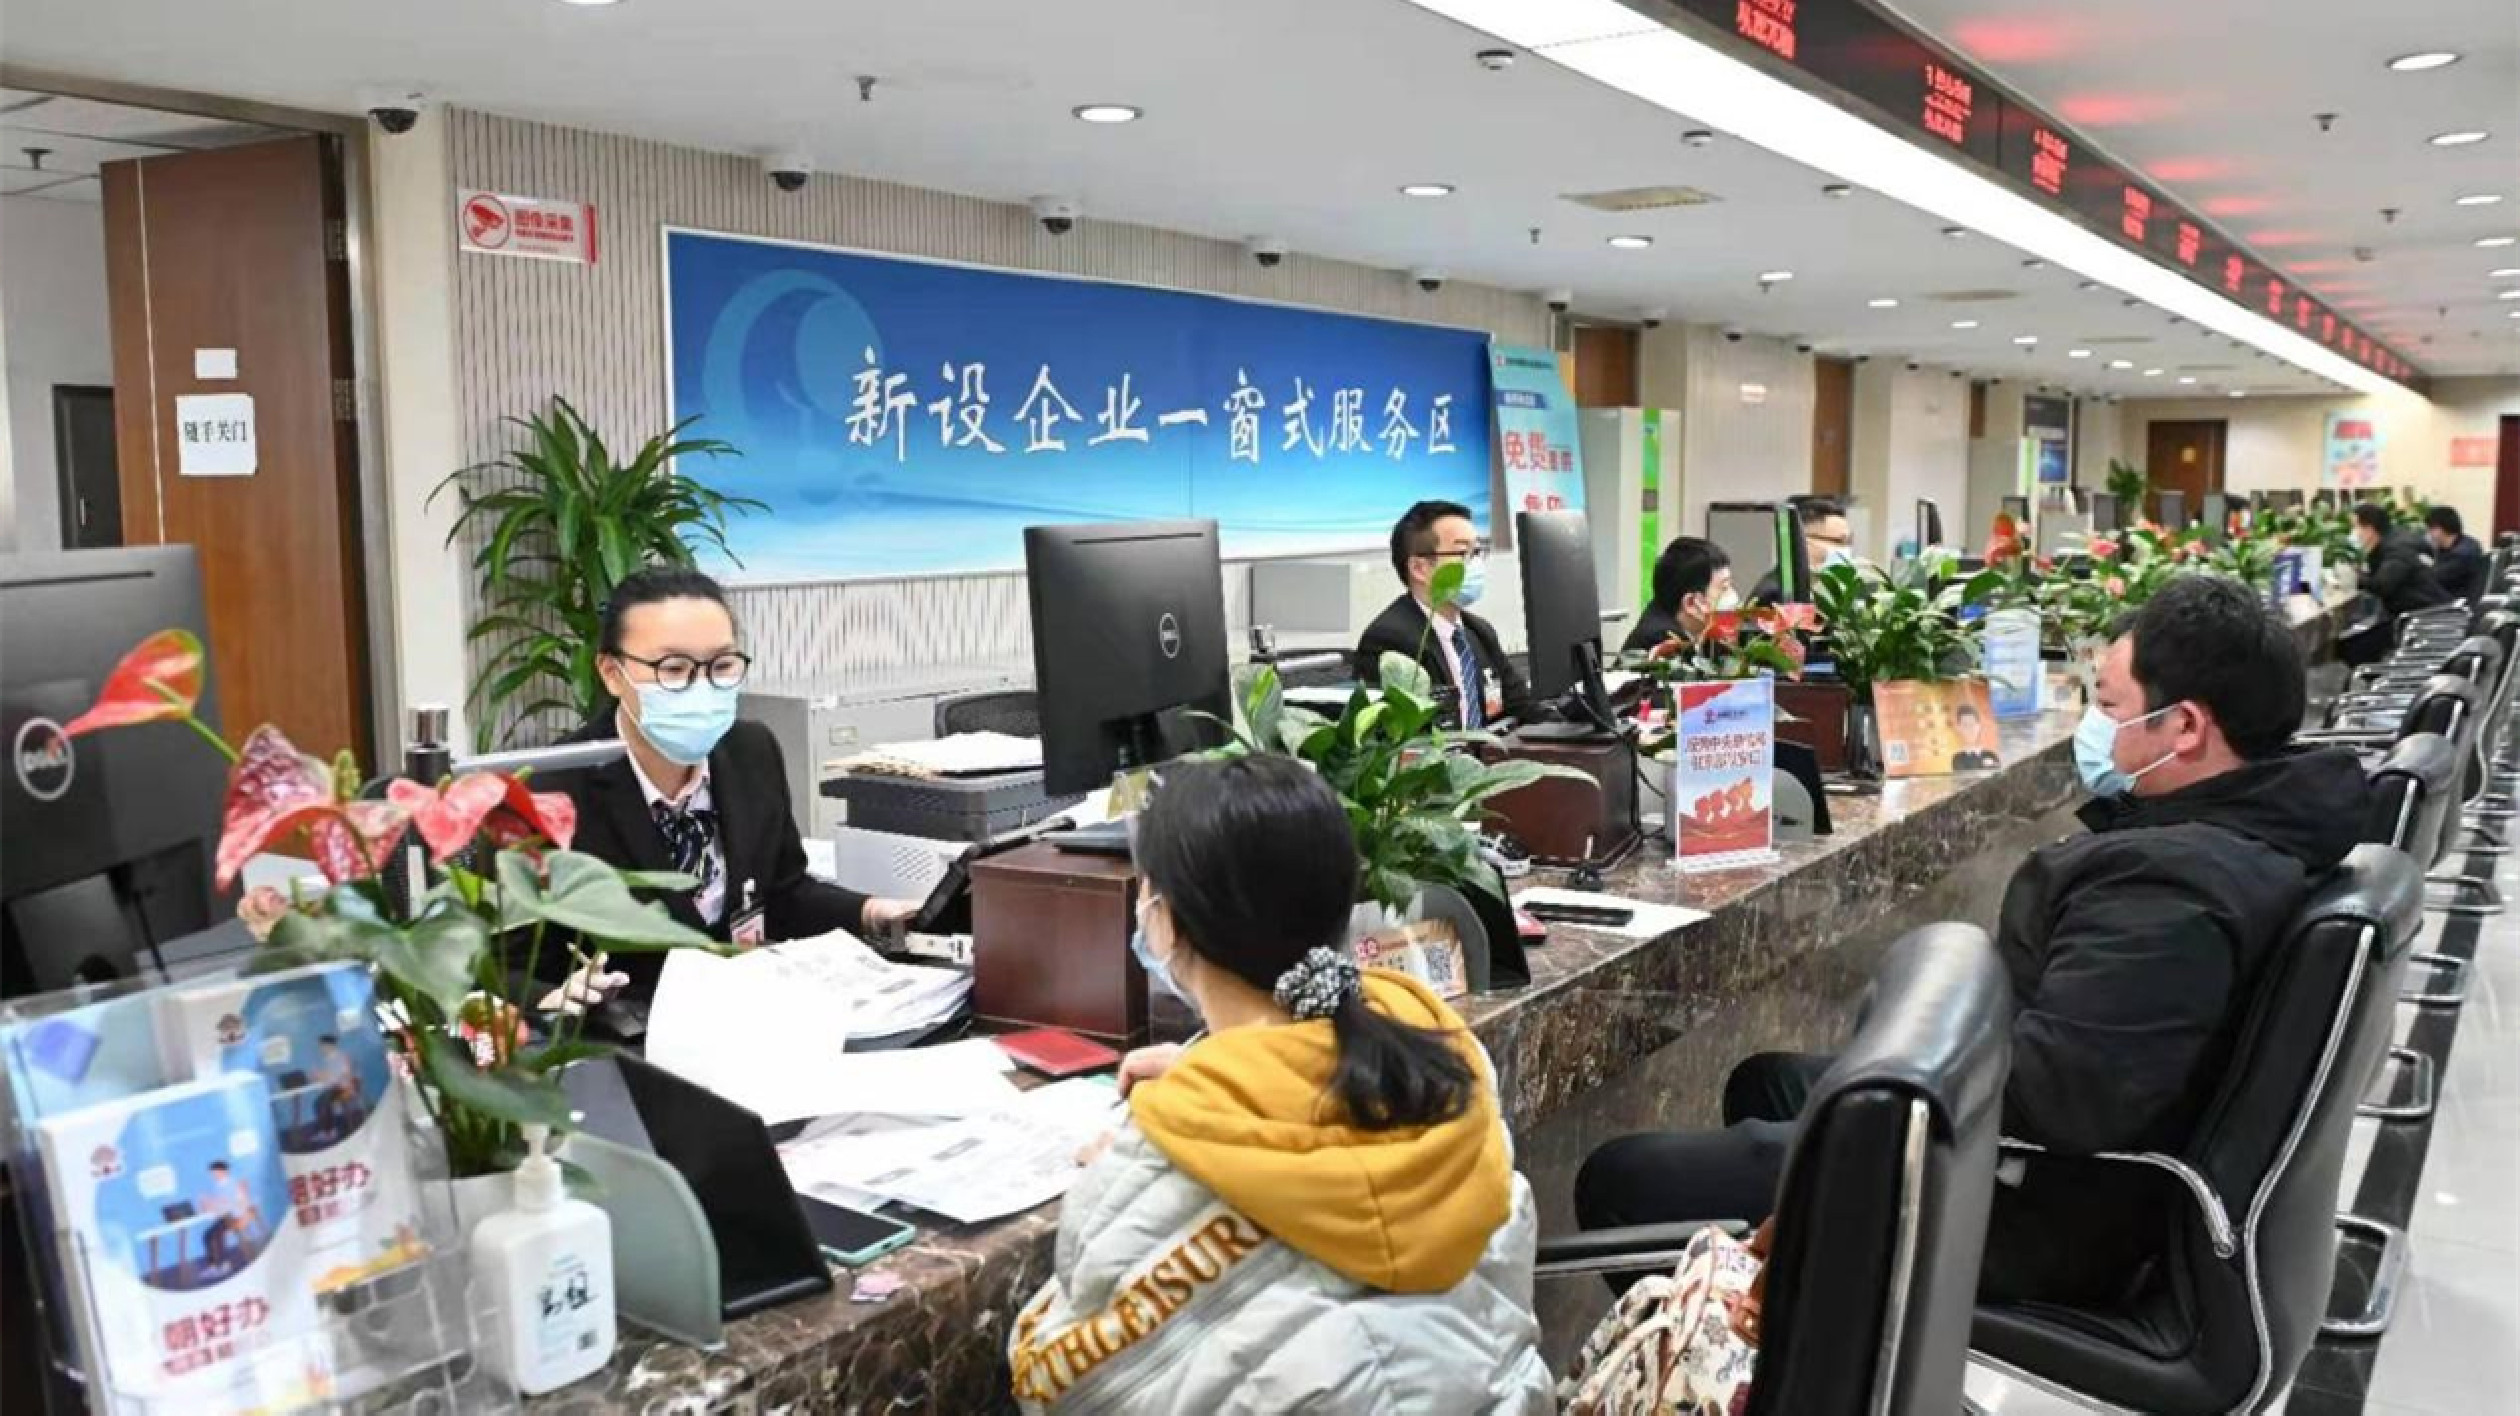 北京朝陽營商環境考評成績連續五年位居全市第一